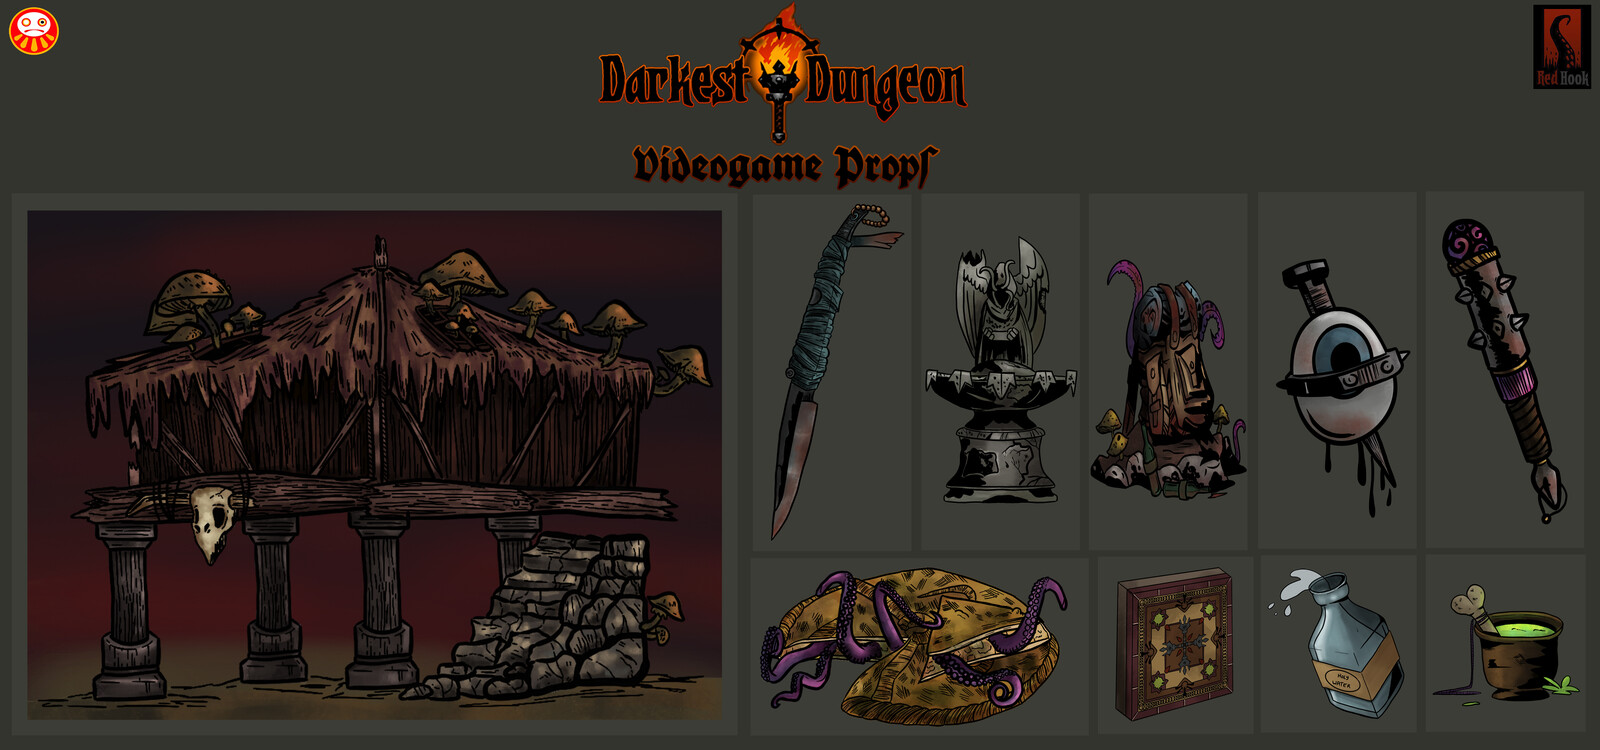 Props - Darkest Dungeon